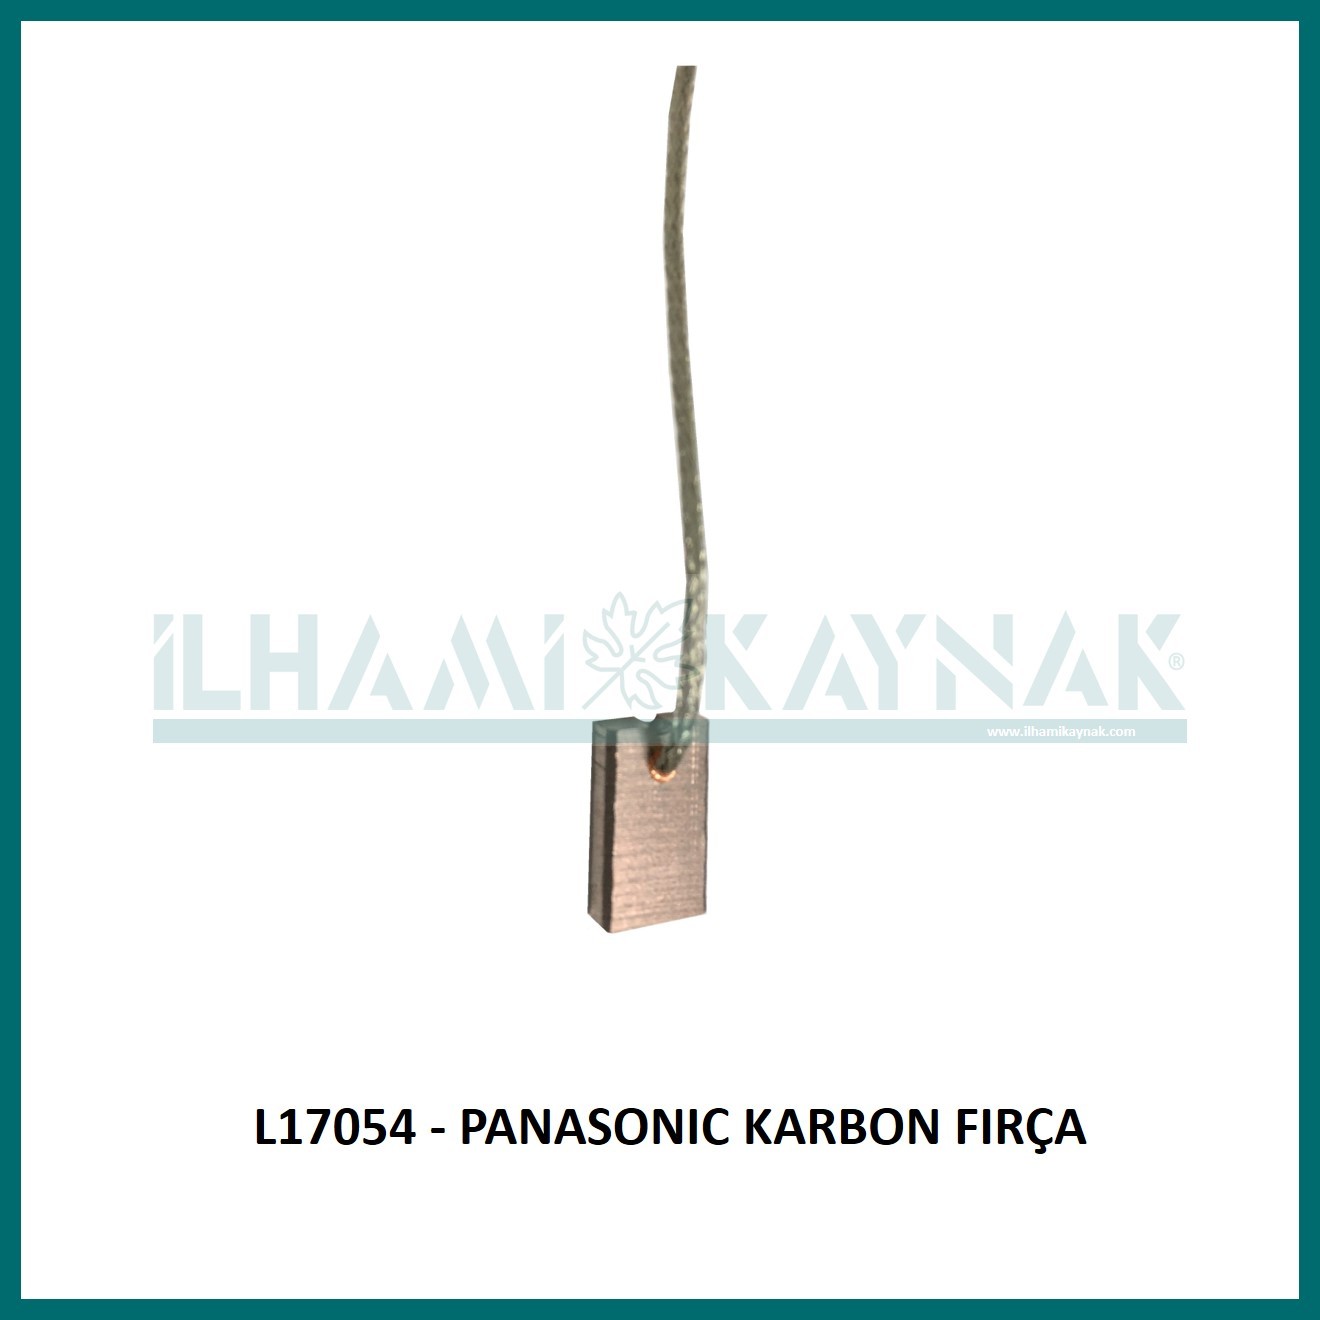 L17054 - PANASONIC KARBON FIRÇA - 3*8.5*13 mm - Minimum Satın Alım: 10 Adet